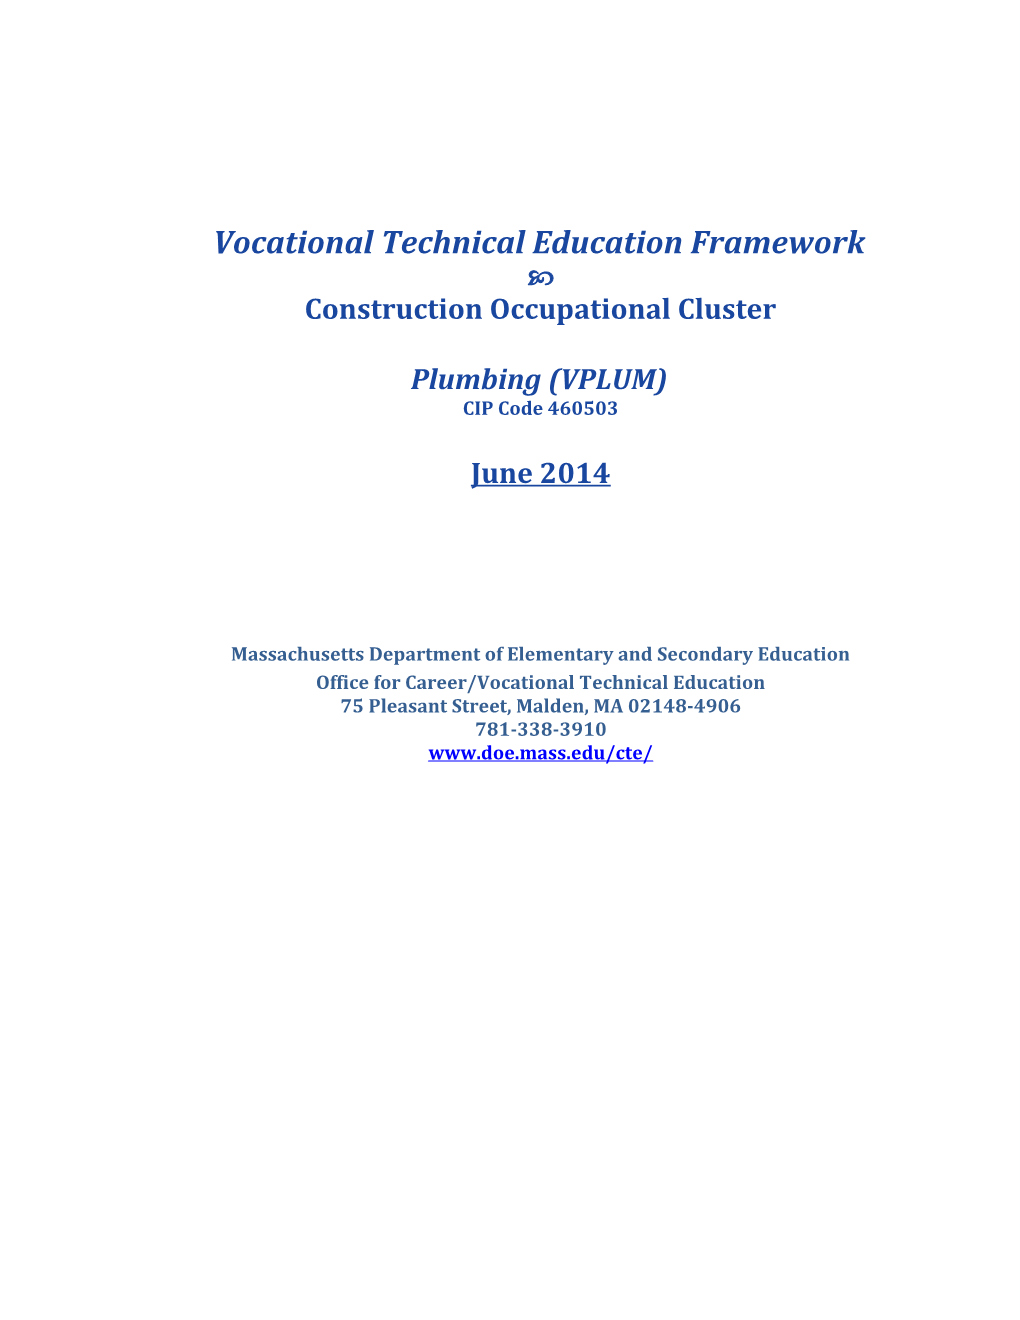 VTE Framework: Plumbing